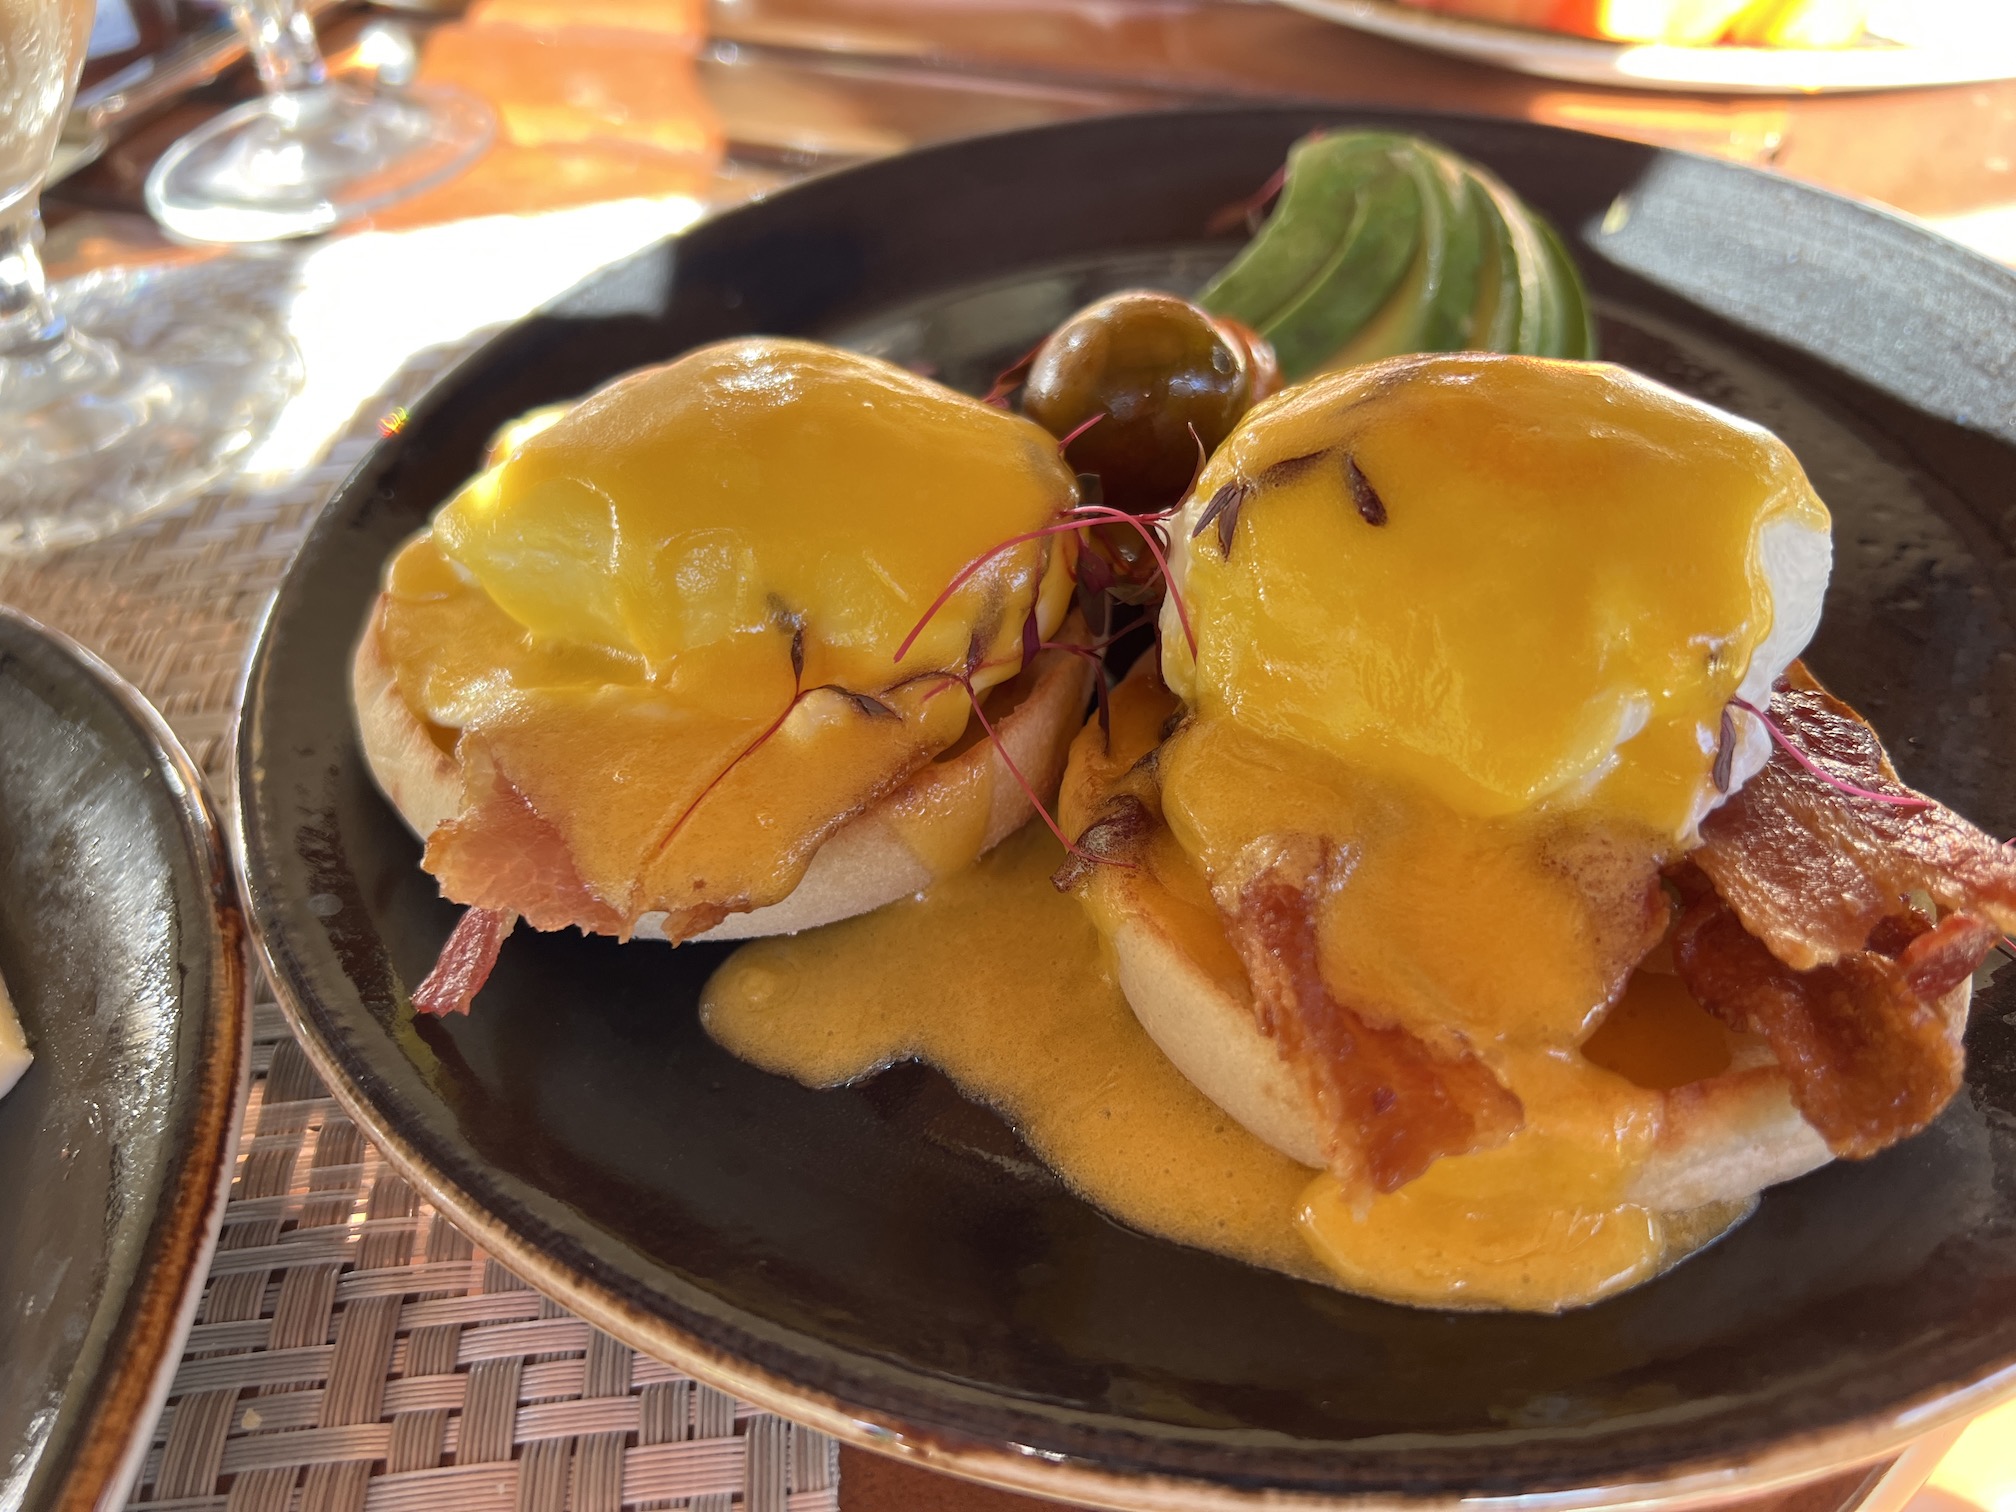 Breakfast at the JW Marriott Guanacaste - Eggs Benedict